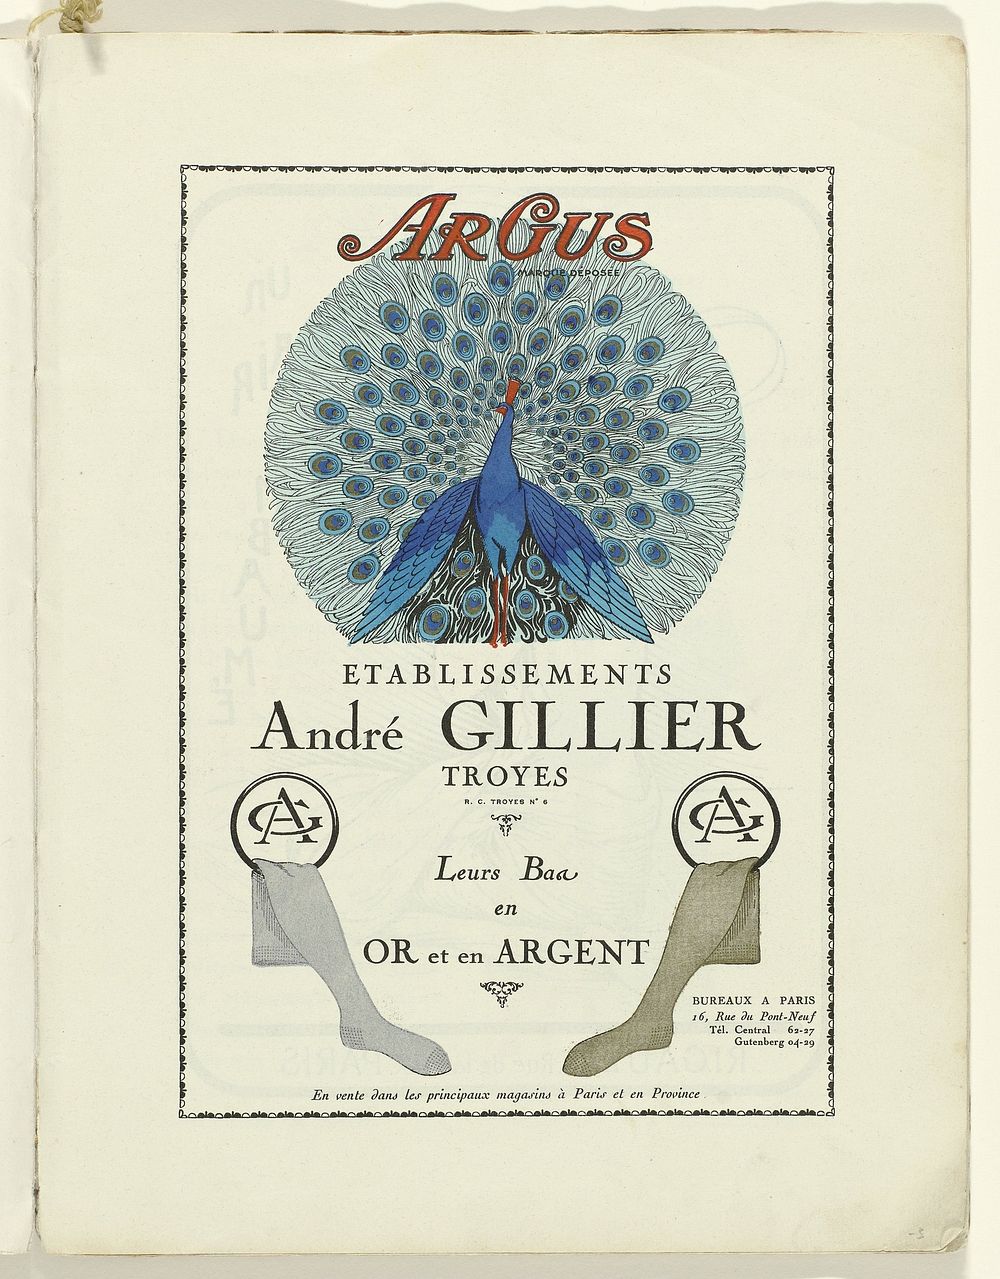 Advertentie voor kousen van Andr&eacute; Gillier (1924) print in high resolution.  